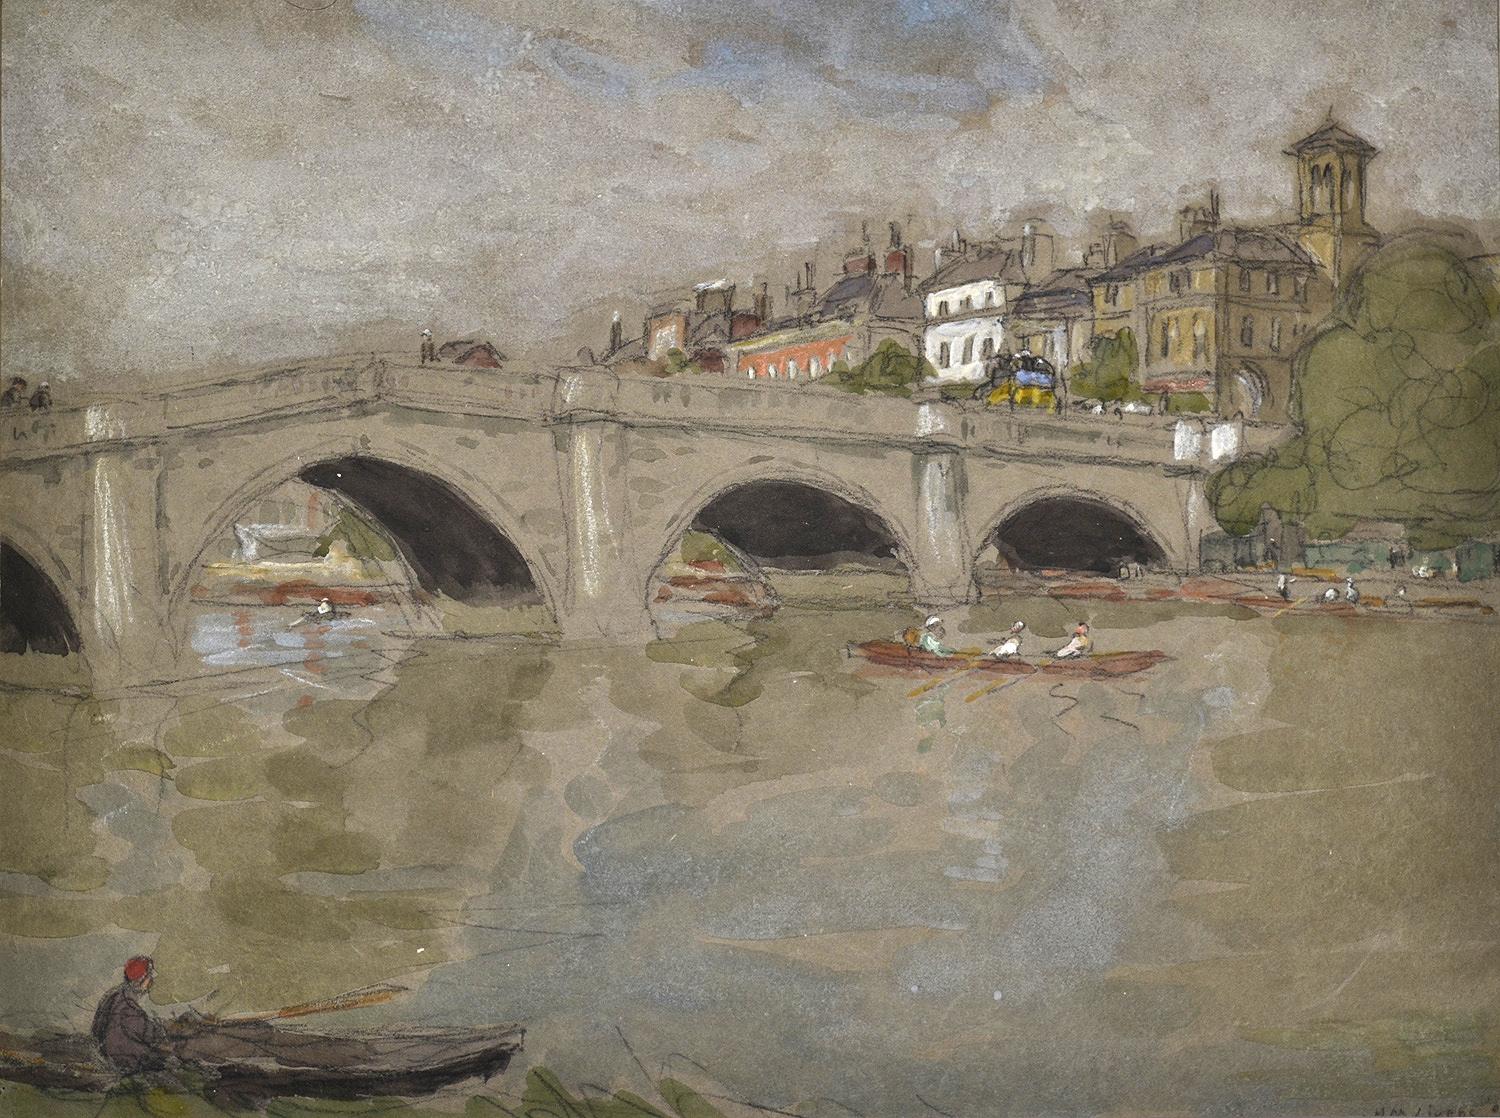 Horace Mann Livens Landscape Art - Richmond Bridge, Victorian Oil Painting,  London Scene